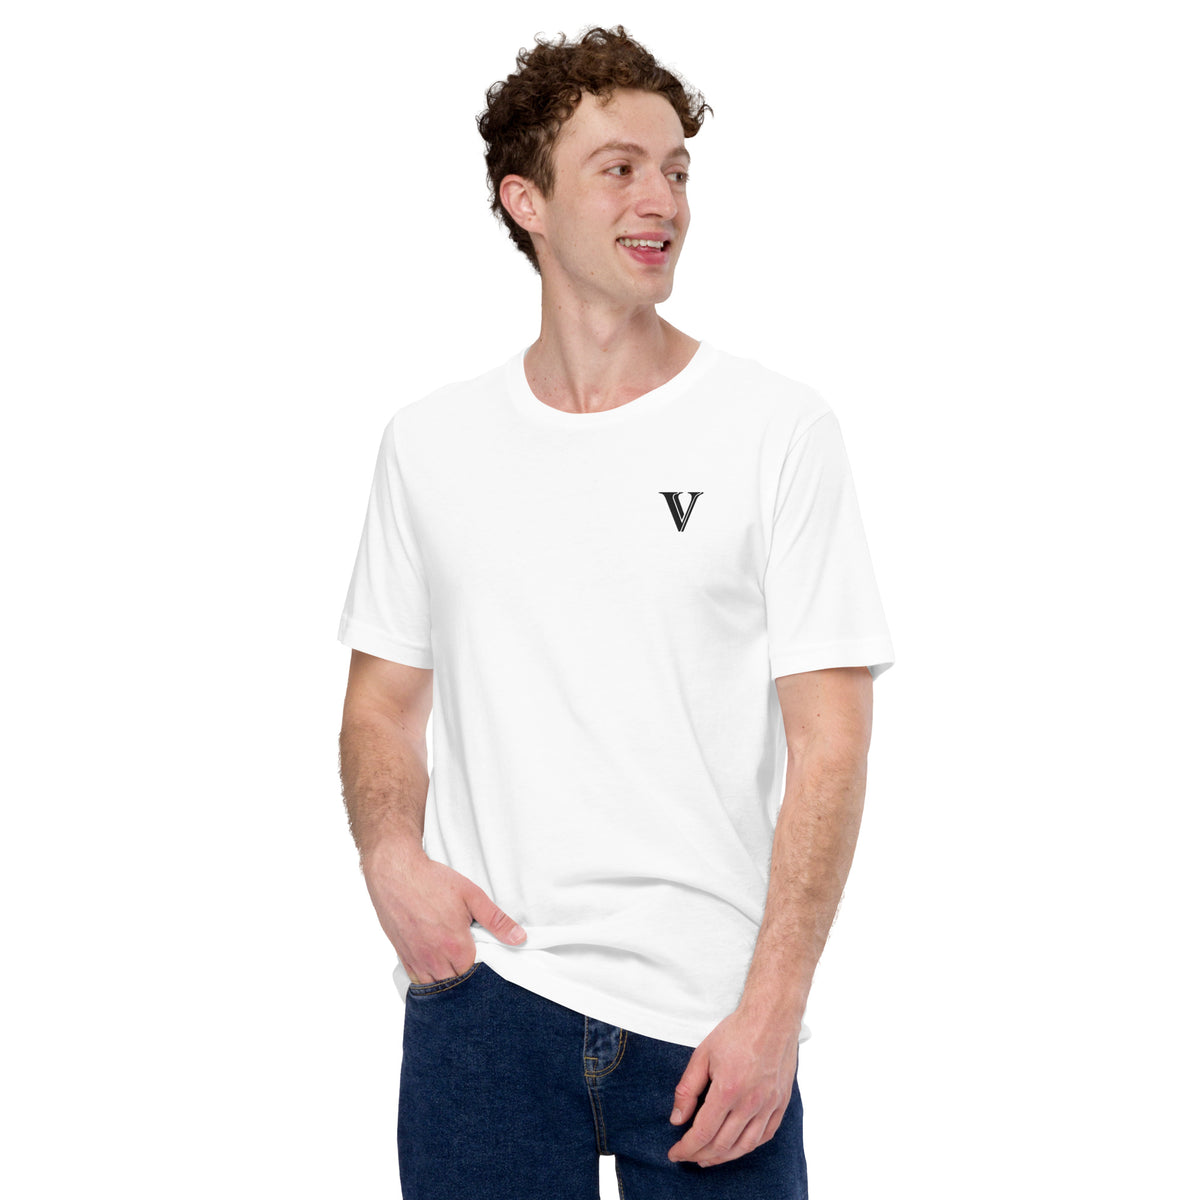 VV Embroidered T-Shirt (White/Black)